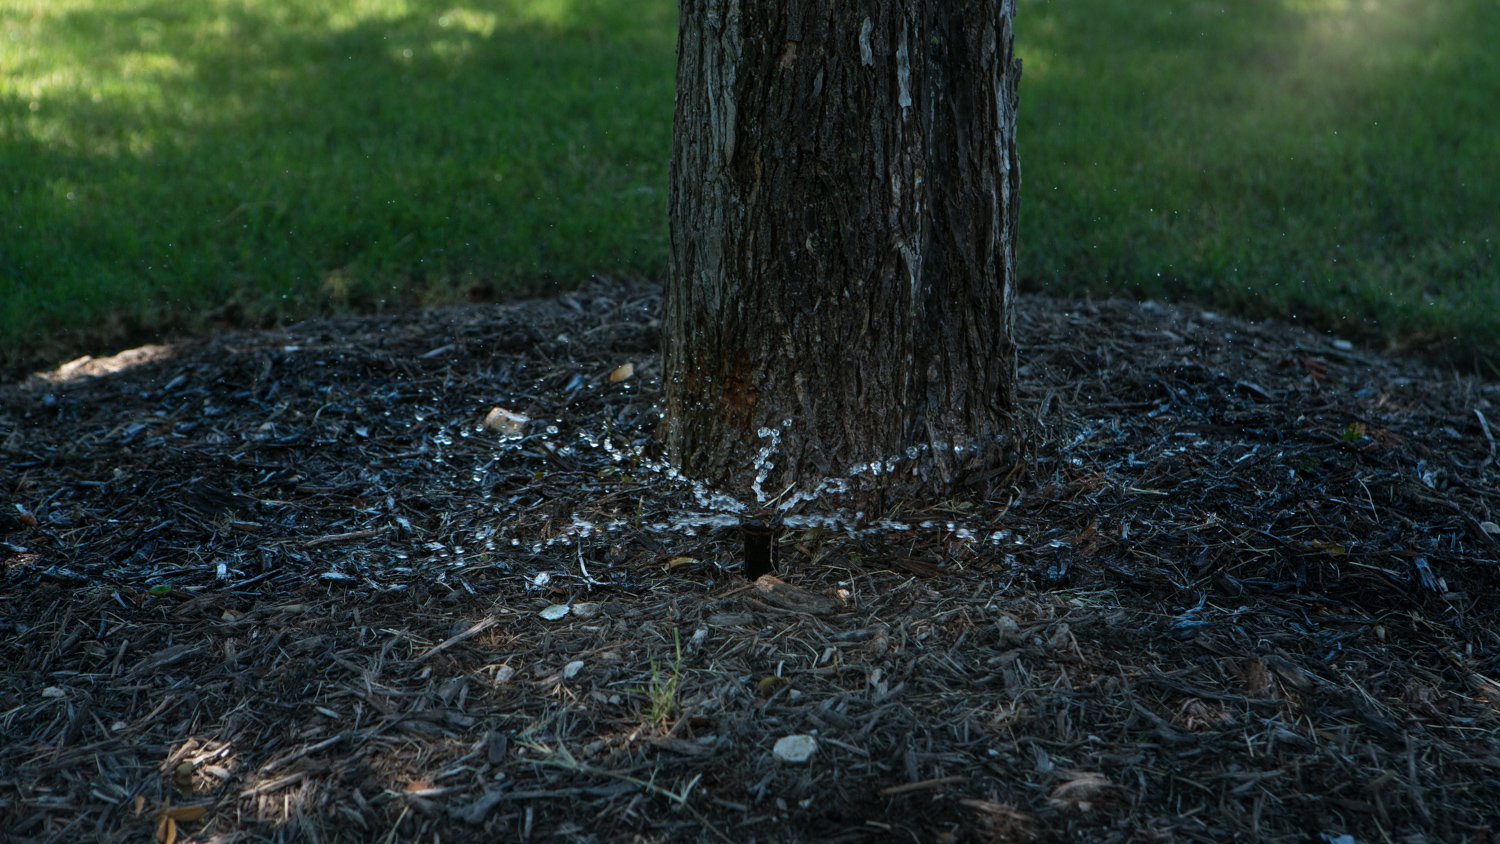 Irrigation sprinkler head hitting a mature tree